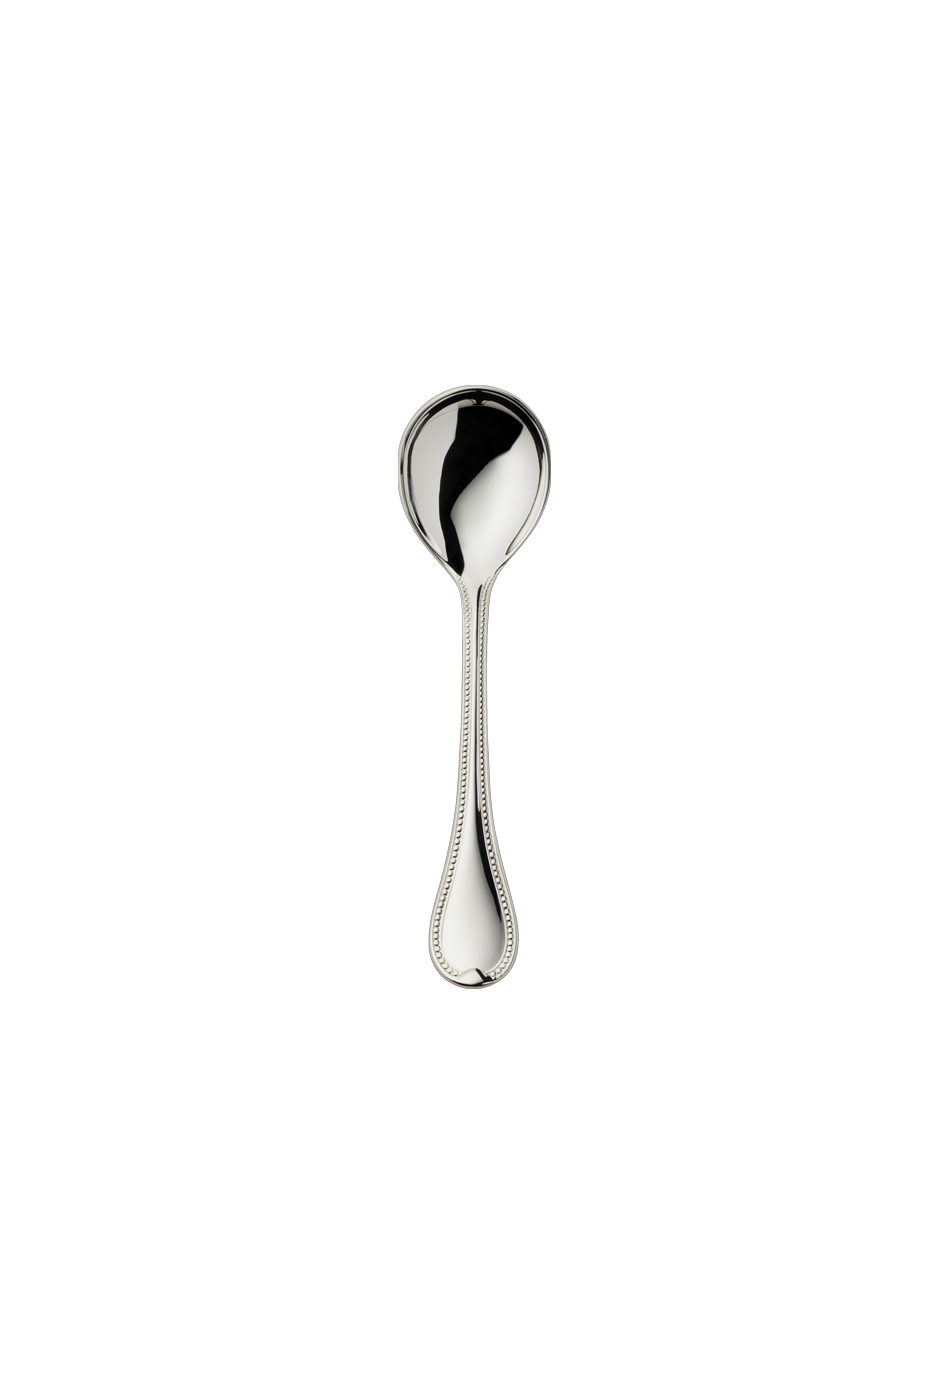 Französisch-Perl Sugar Spoon (150g massive silverplated)